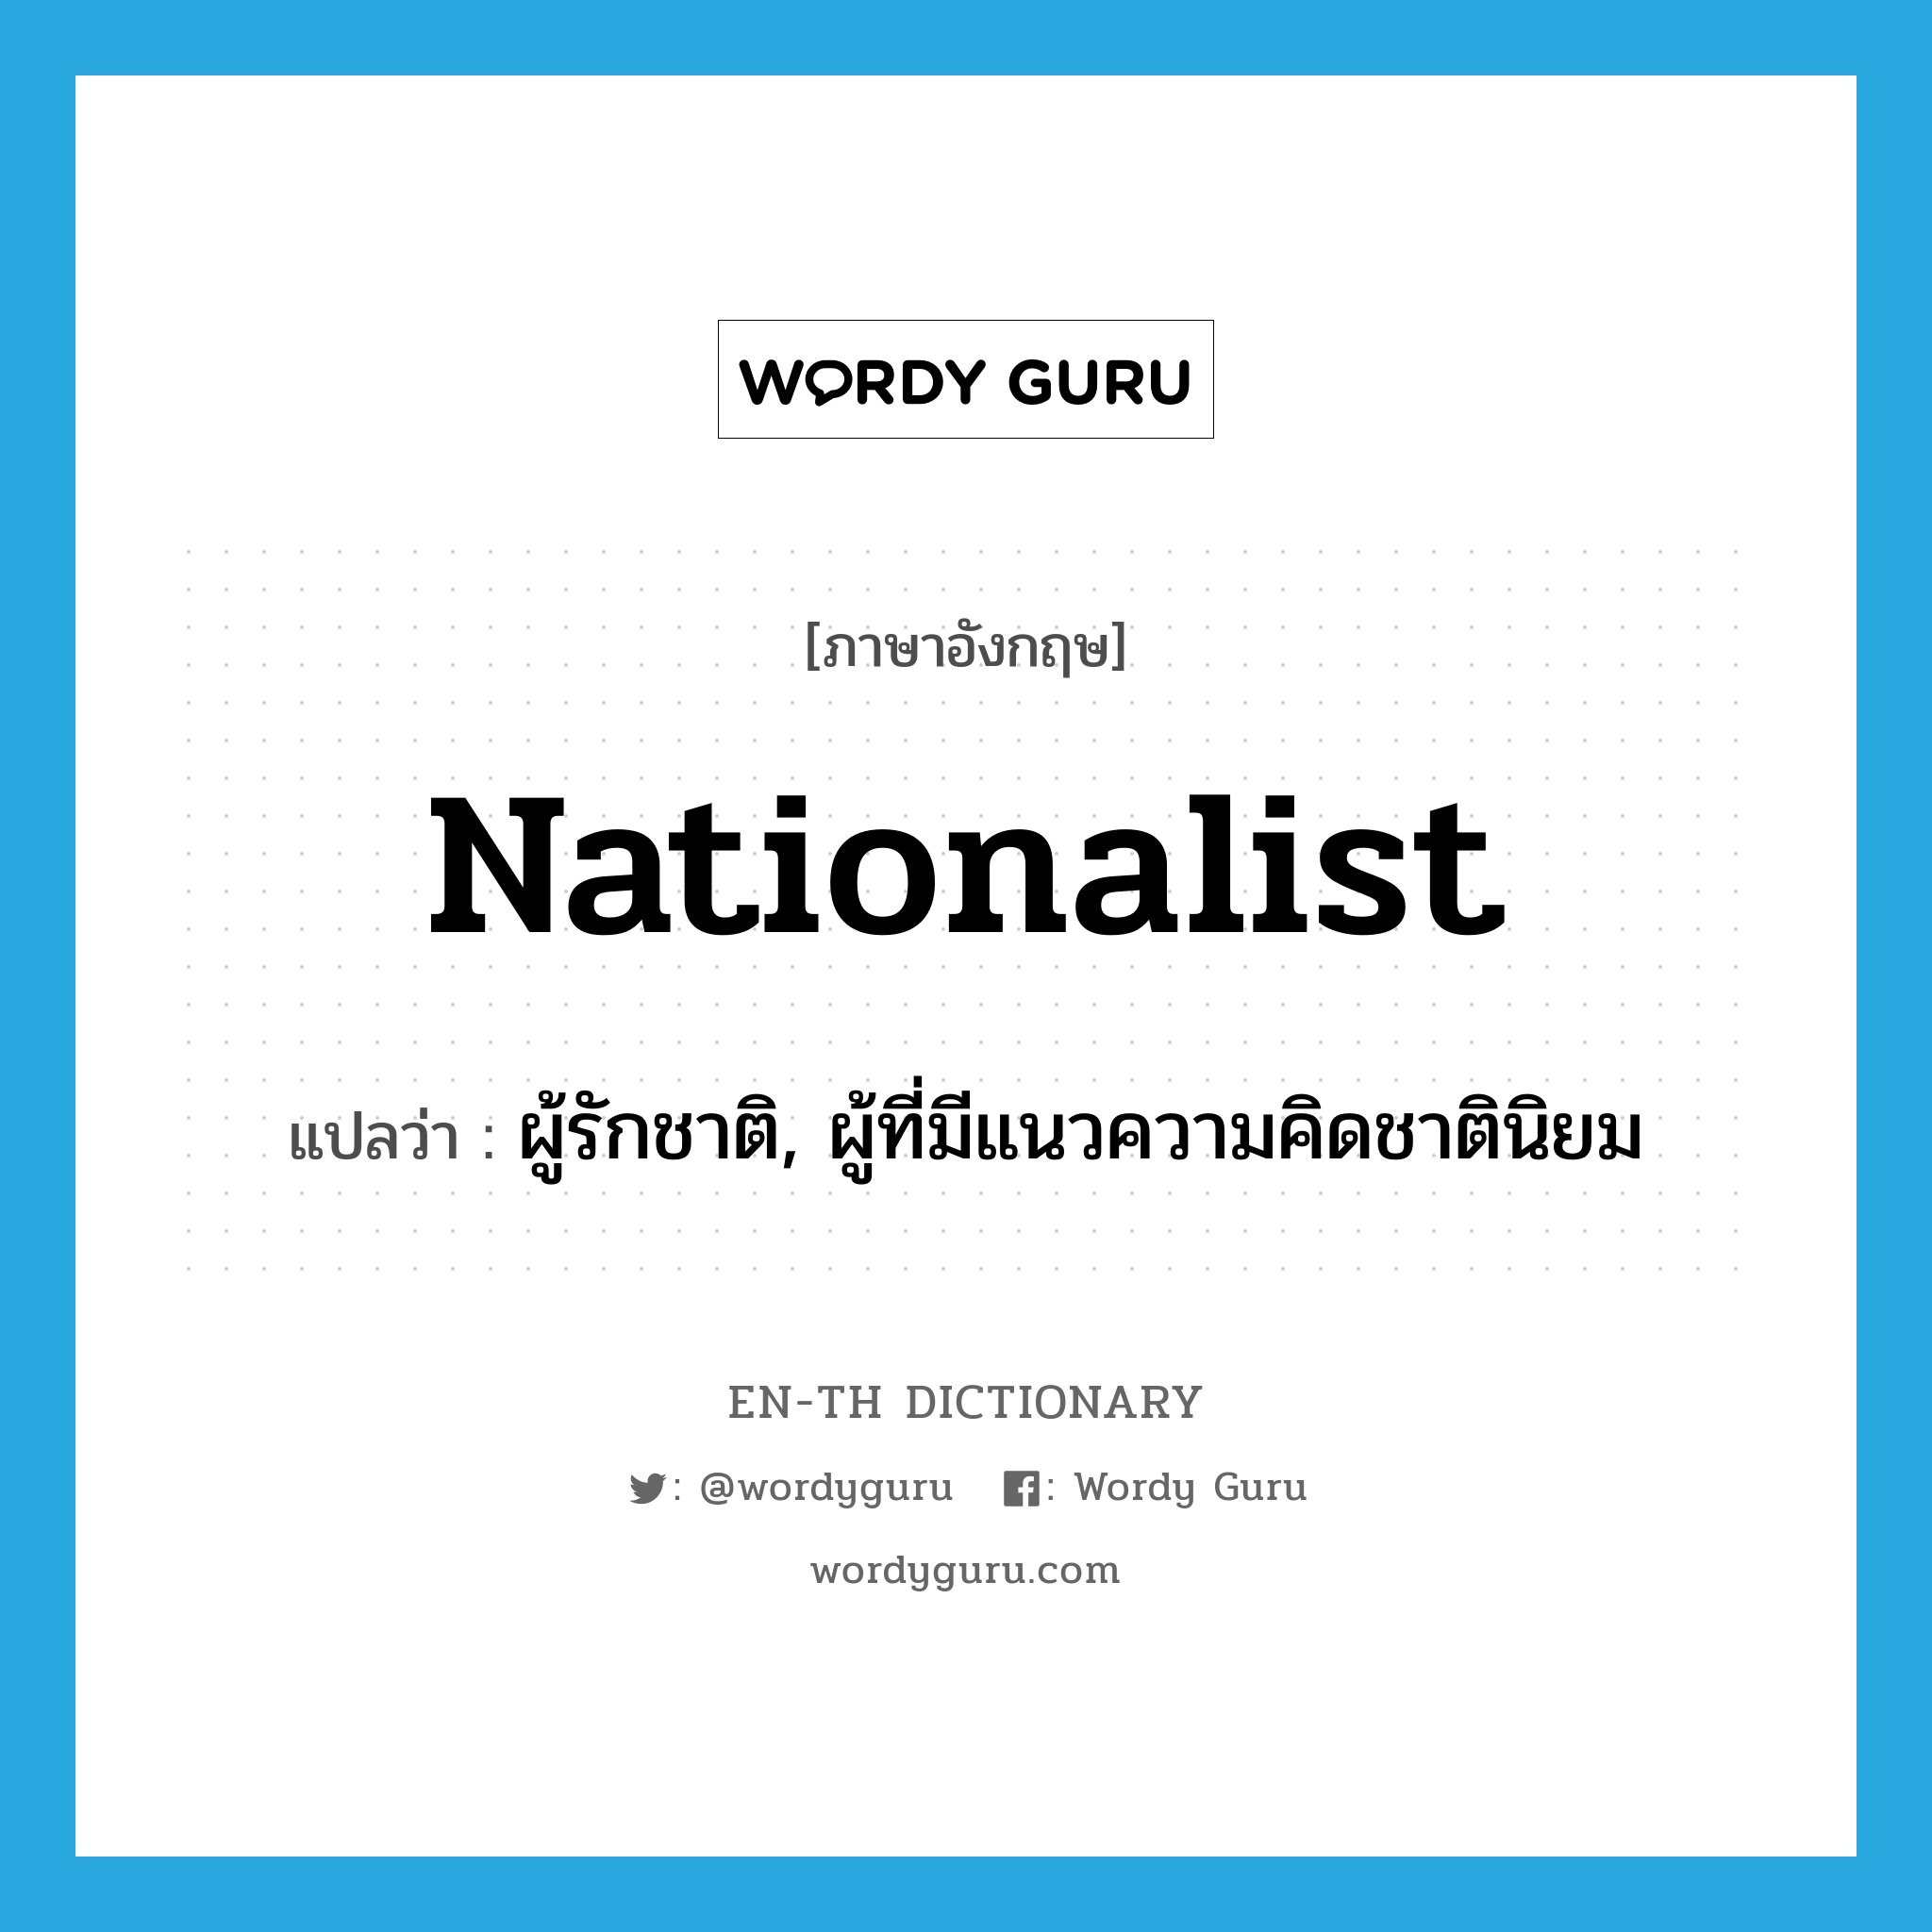 ผู้รักชาติ, ผู้ที่มีแนวความคิดชาตินิยม ภาษาอังกฤษ?, คำศัพท์ภาษาอังกฤษ ผู้รักชาติ, ผู้ที่มีแนวความคิดชาตินิยม แปลว่า nationalist ประเภท N หมวด N